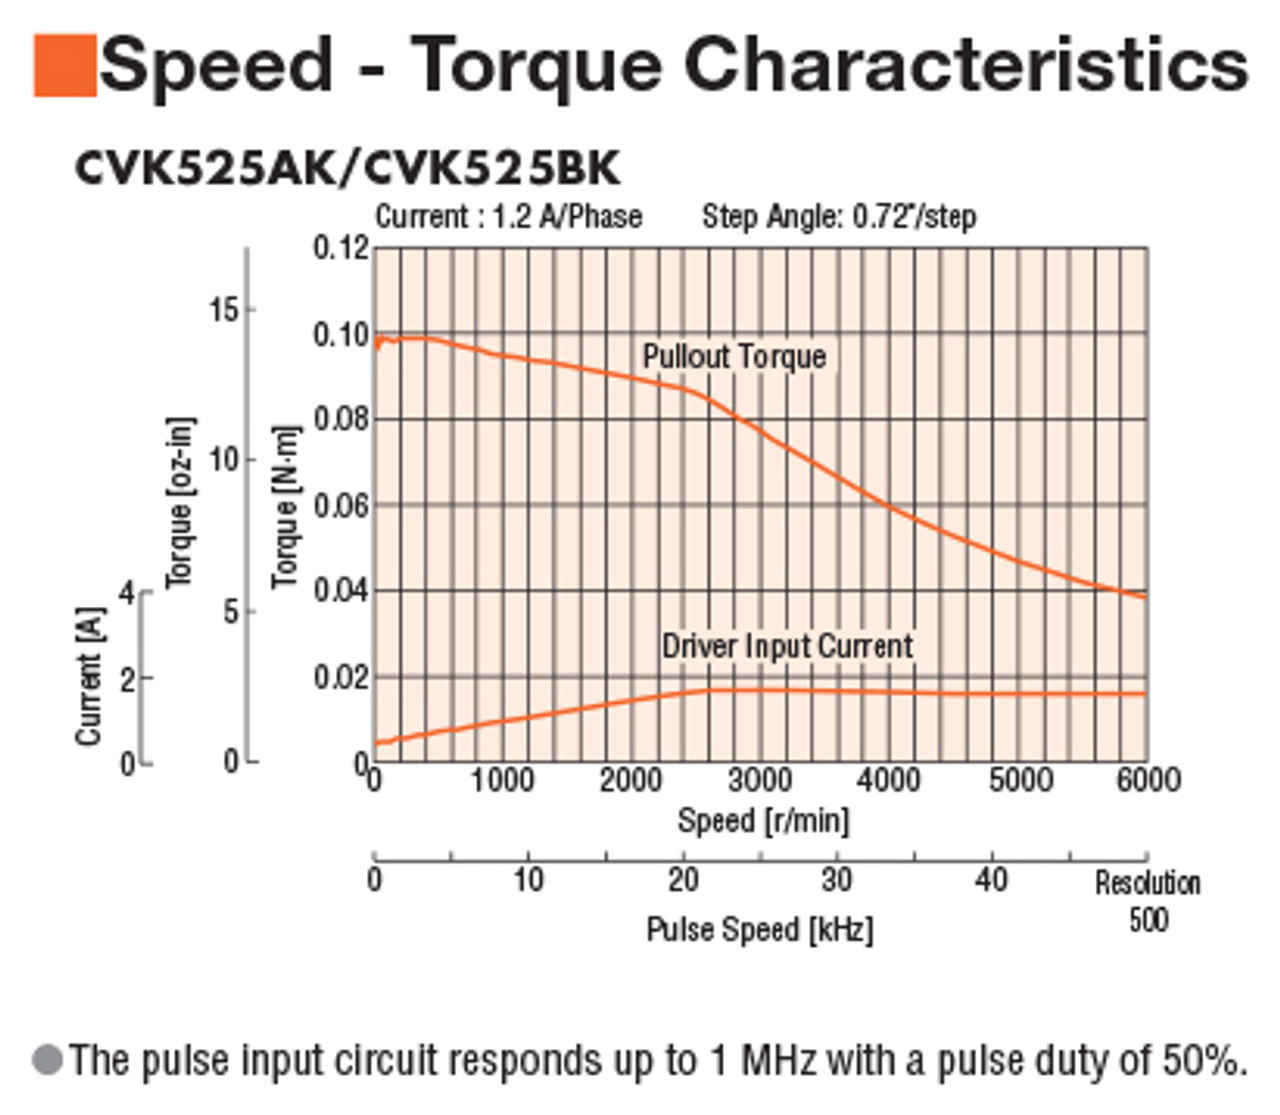 CVK525AK - Speed-Torque